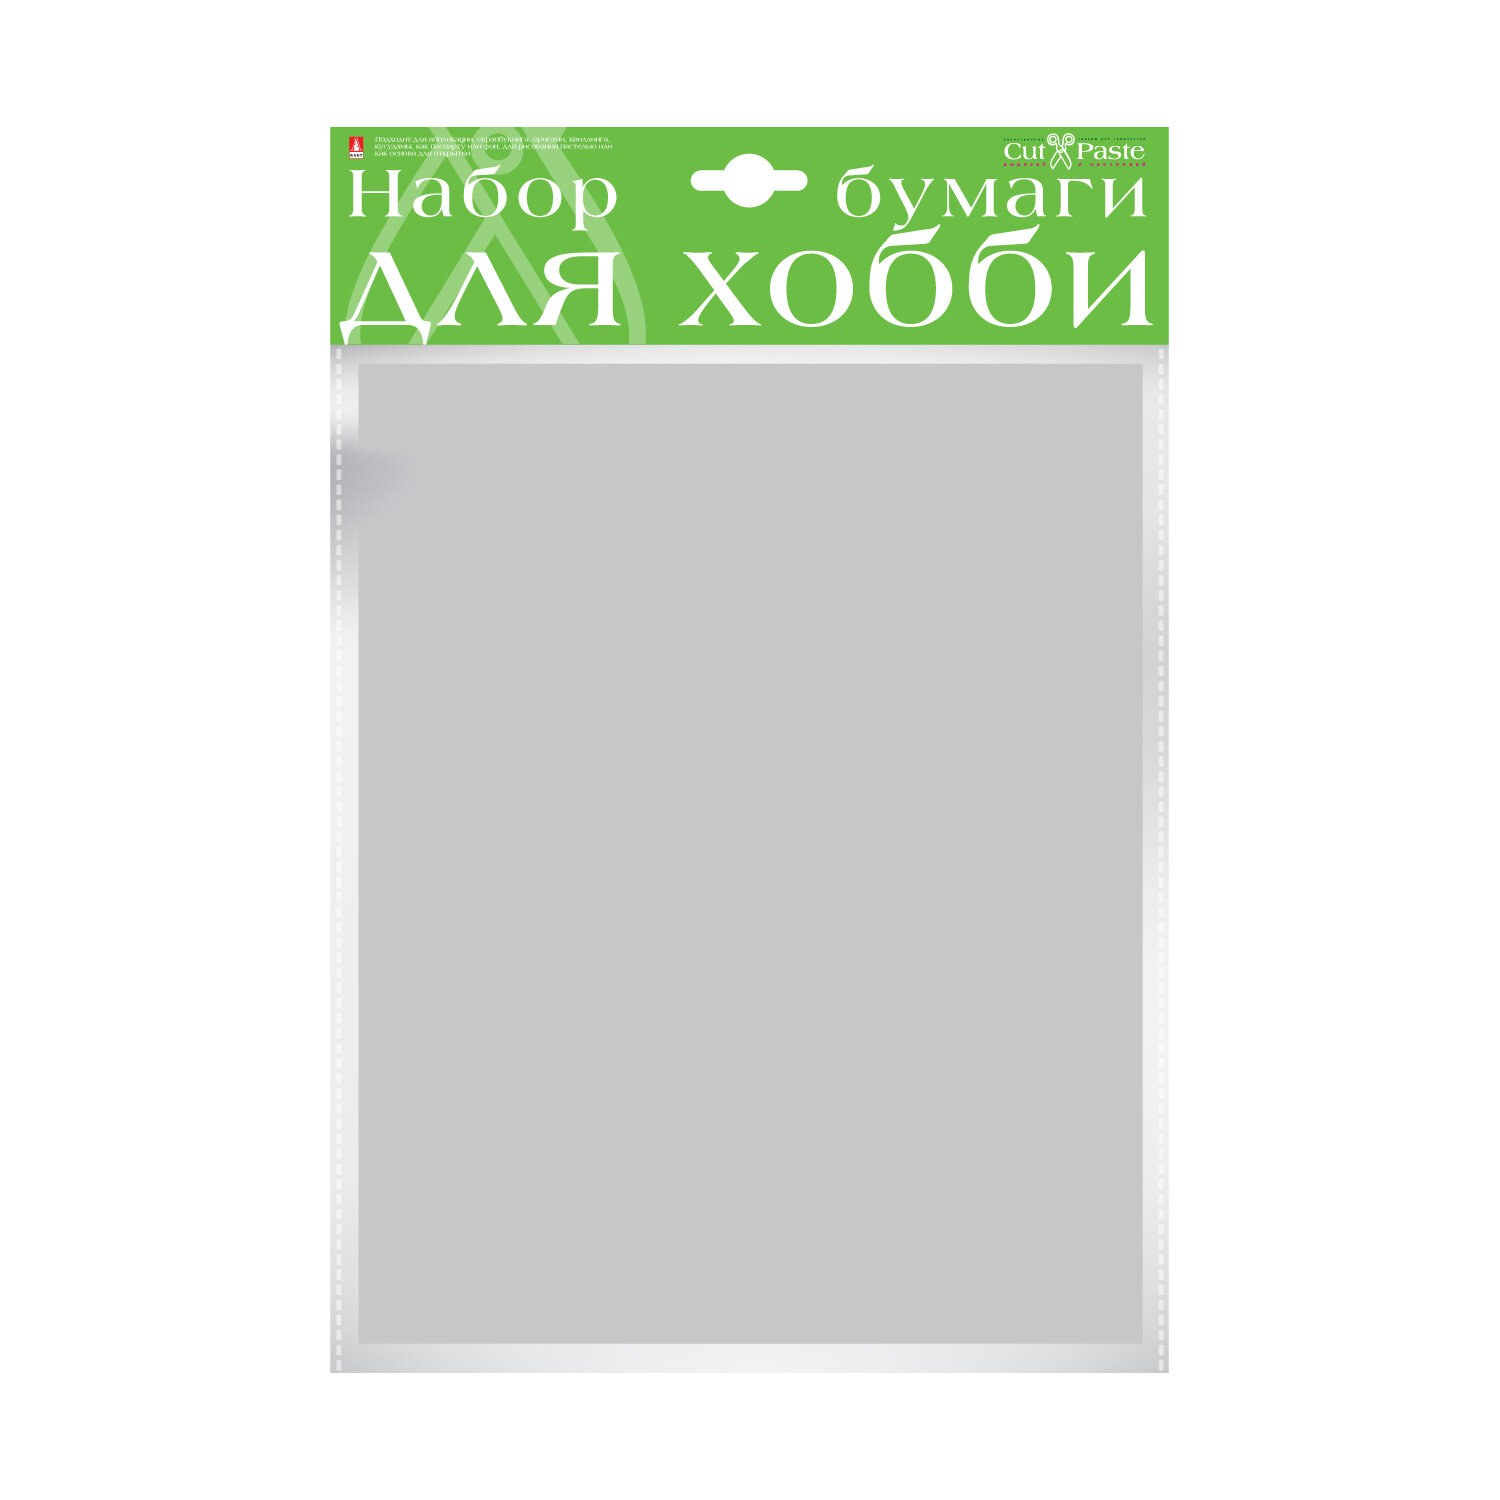 Набор цветной бумаги HOBBY TIME, А4 (222 х 352 мм), 10 листов, крашенная в массе, серый, Арт : 2-065/09